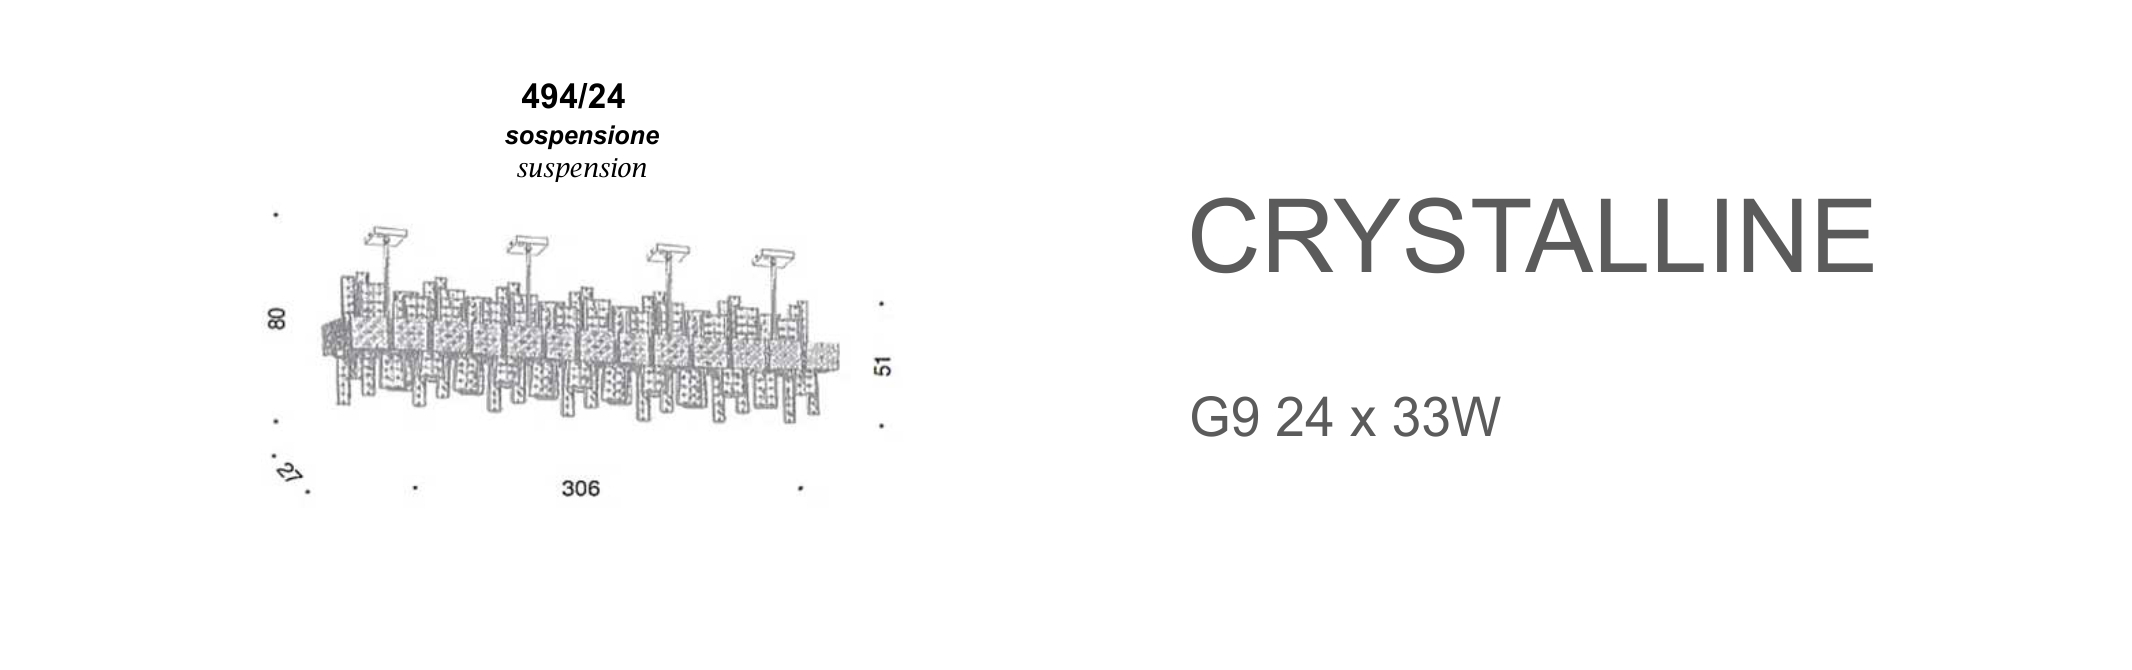 Crystalline 494/24